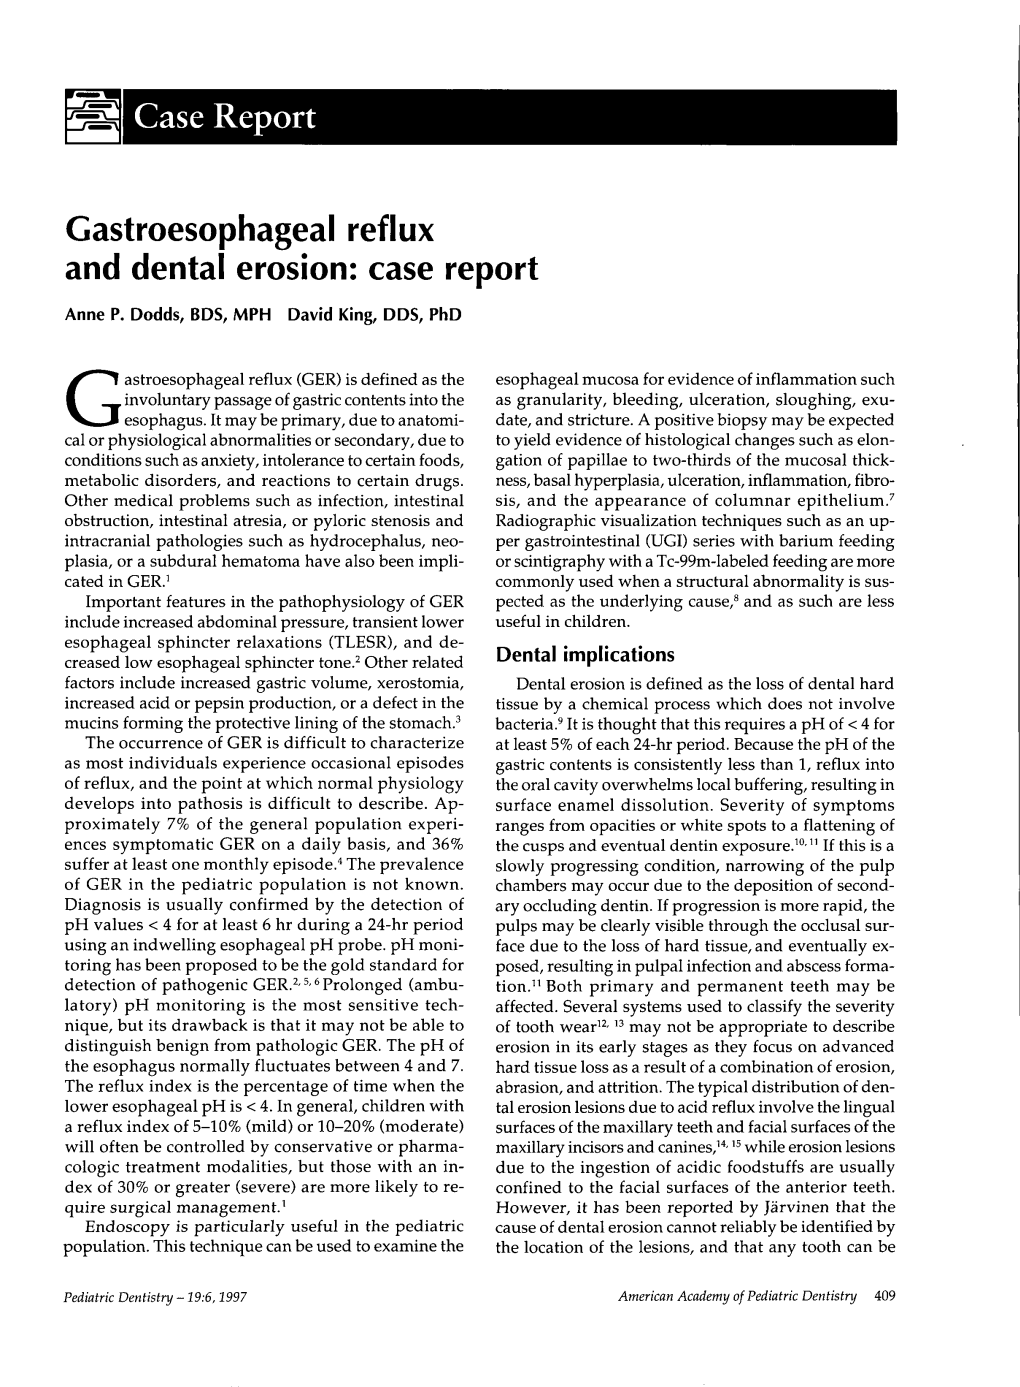 Gastroesophageal Reflux and Dental Erosion